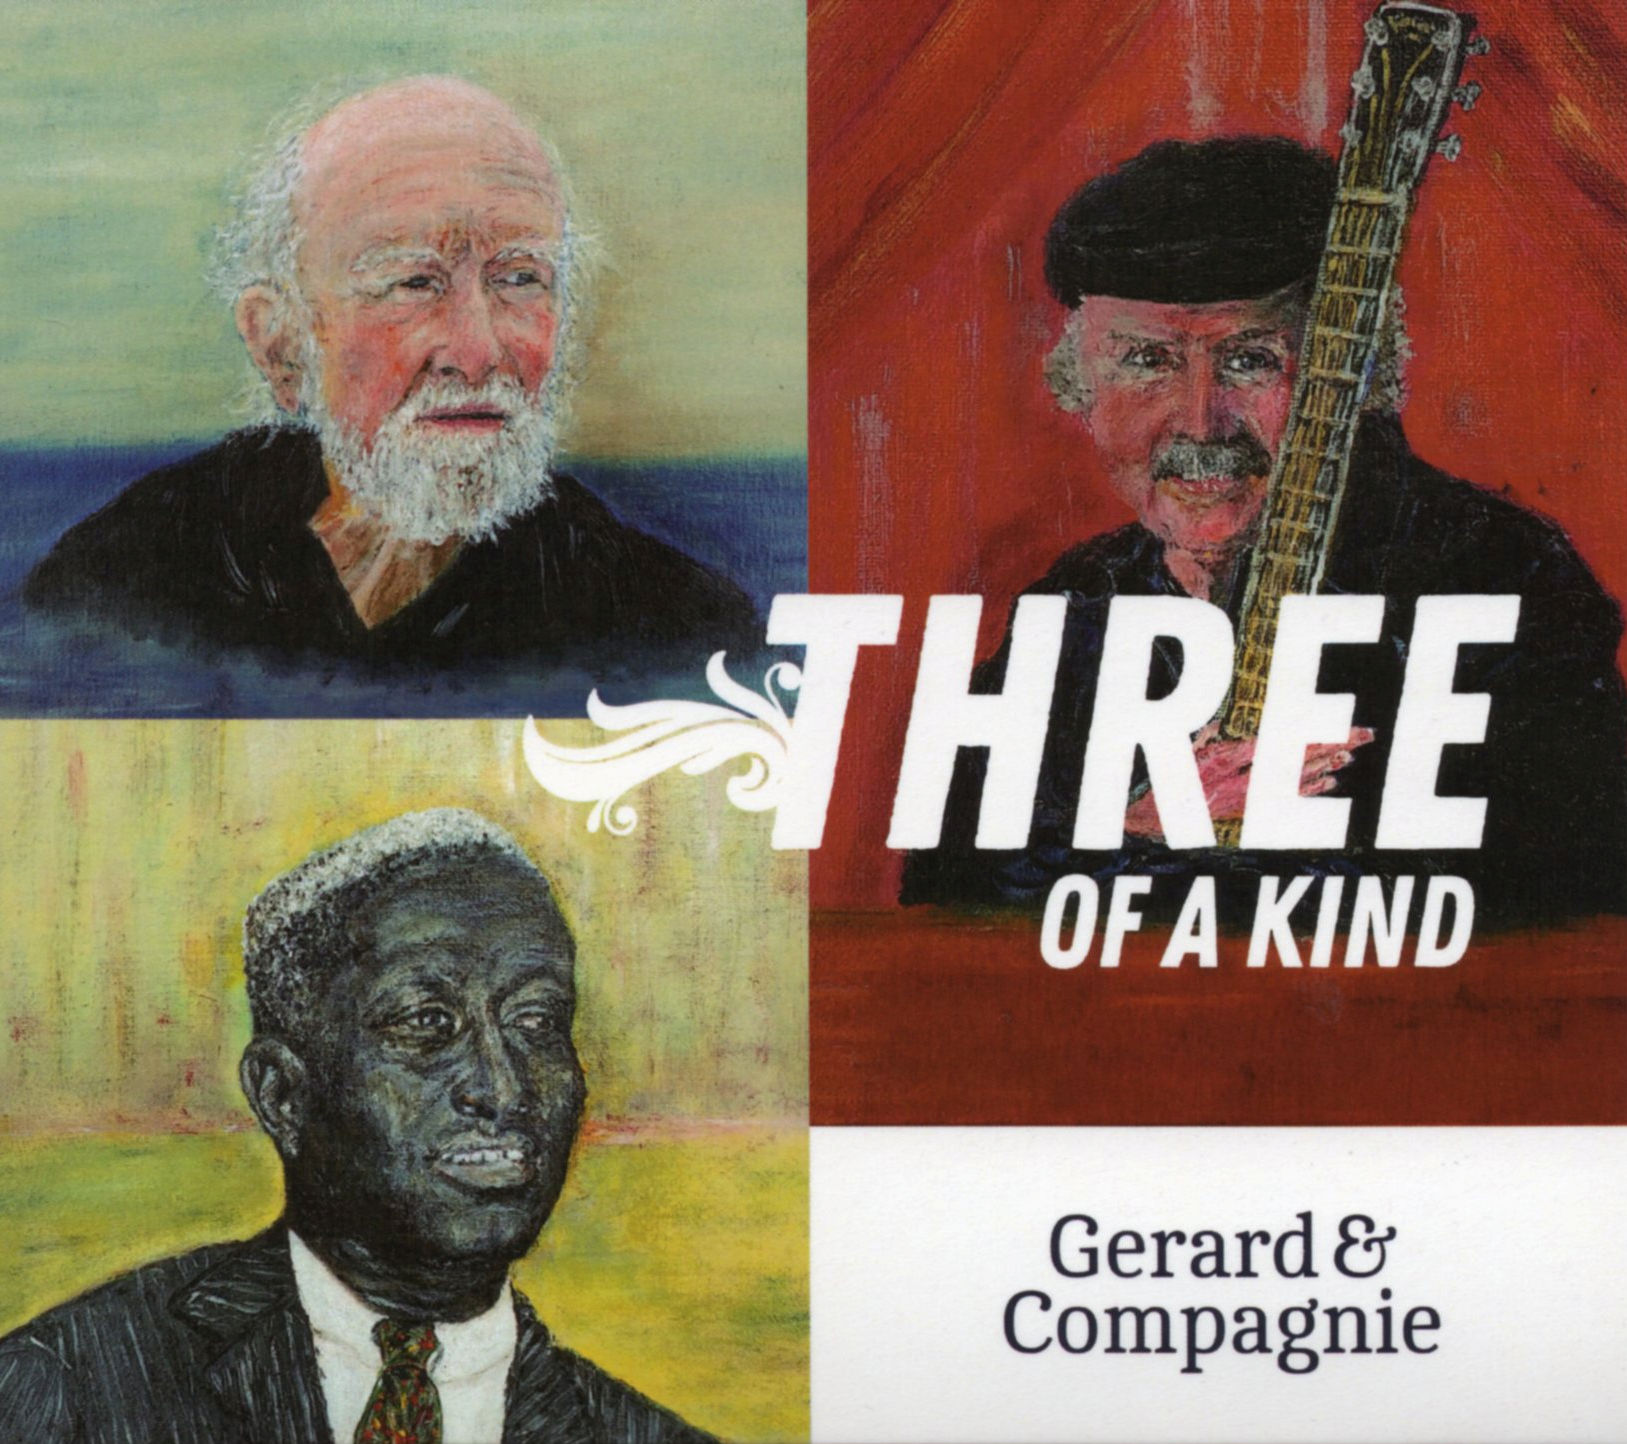 CD ‘Three of a kind’